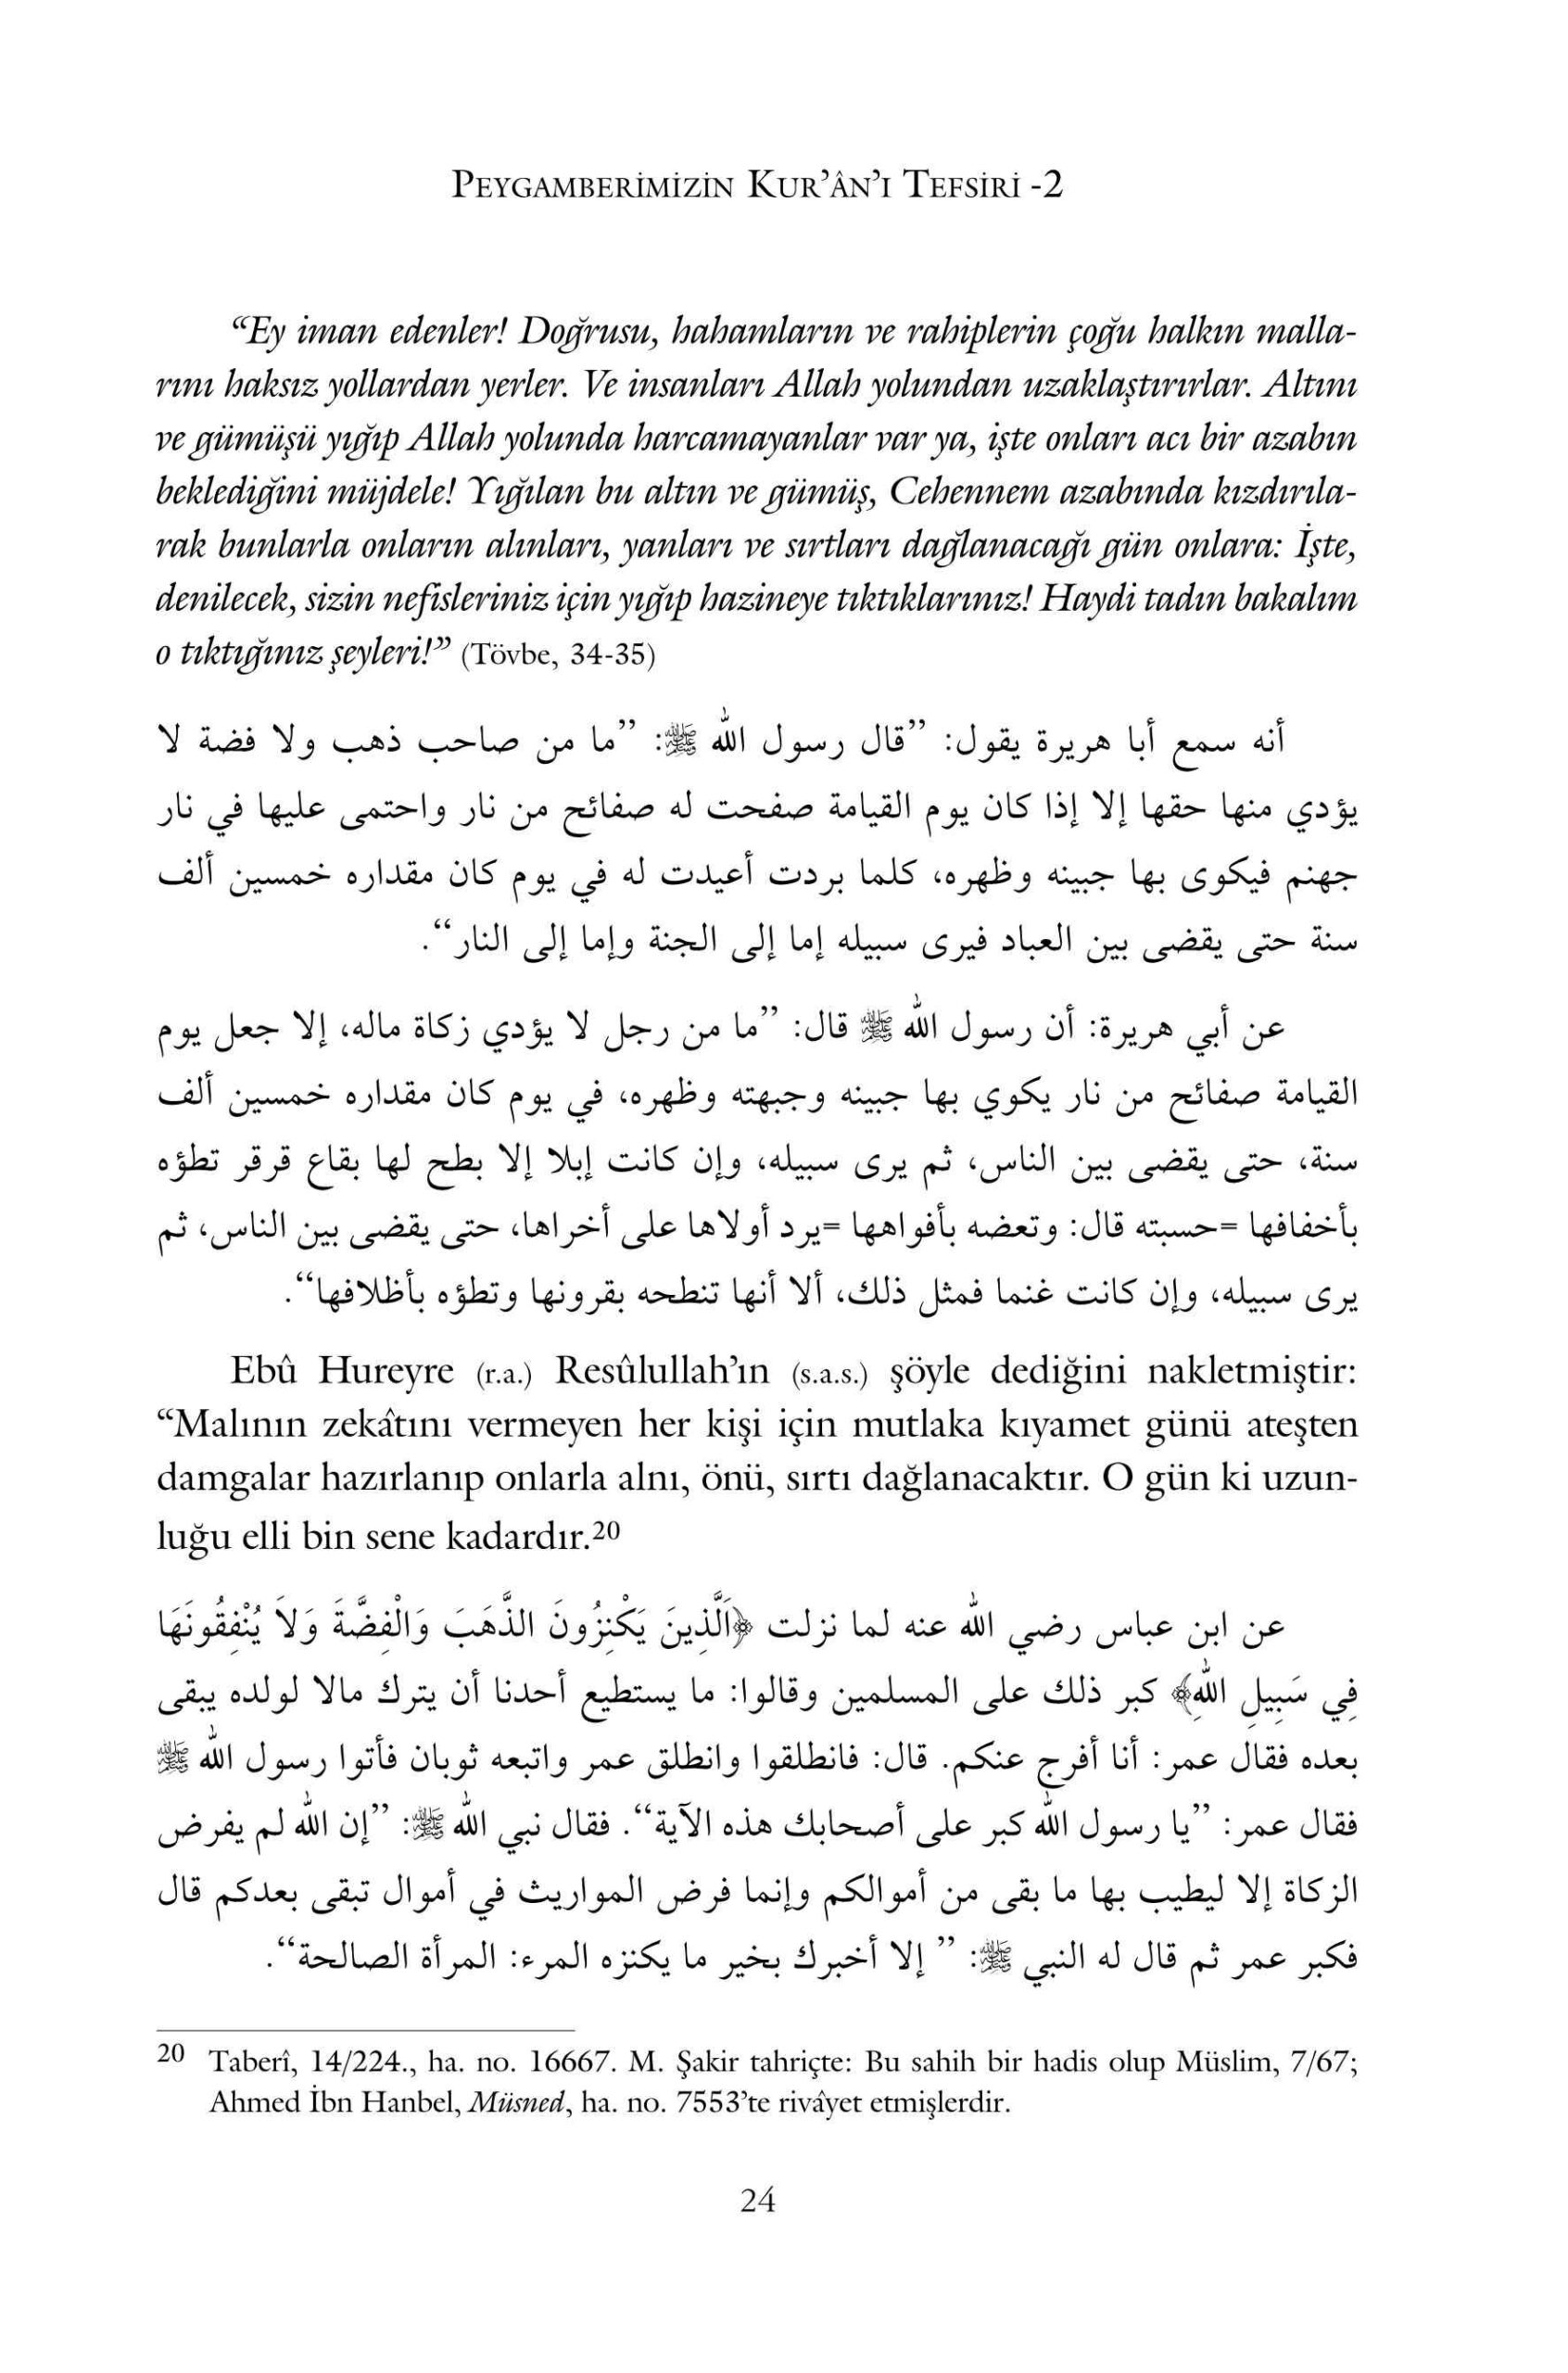 Suat Yildirim - Peygamberimizin Kurani Tefsiri - 2 - IsikAkademiY.pdf, 481-Sayfa 